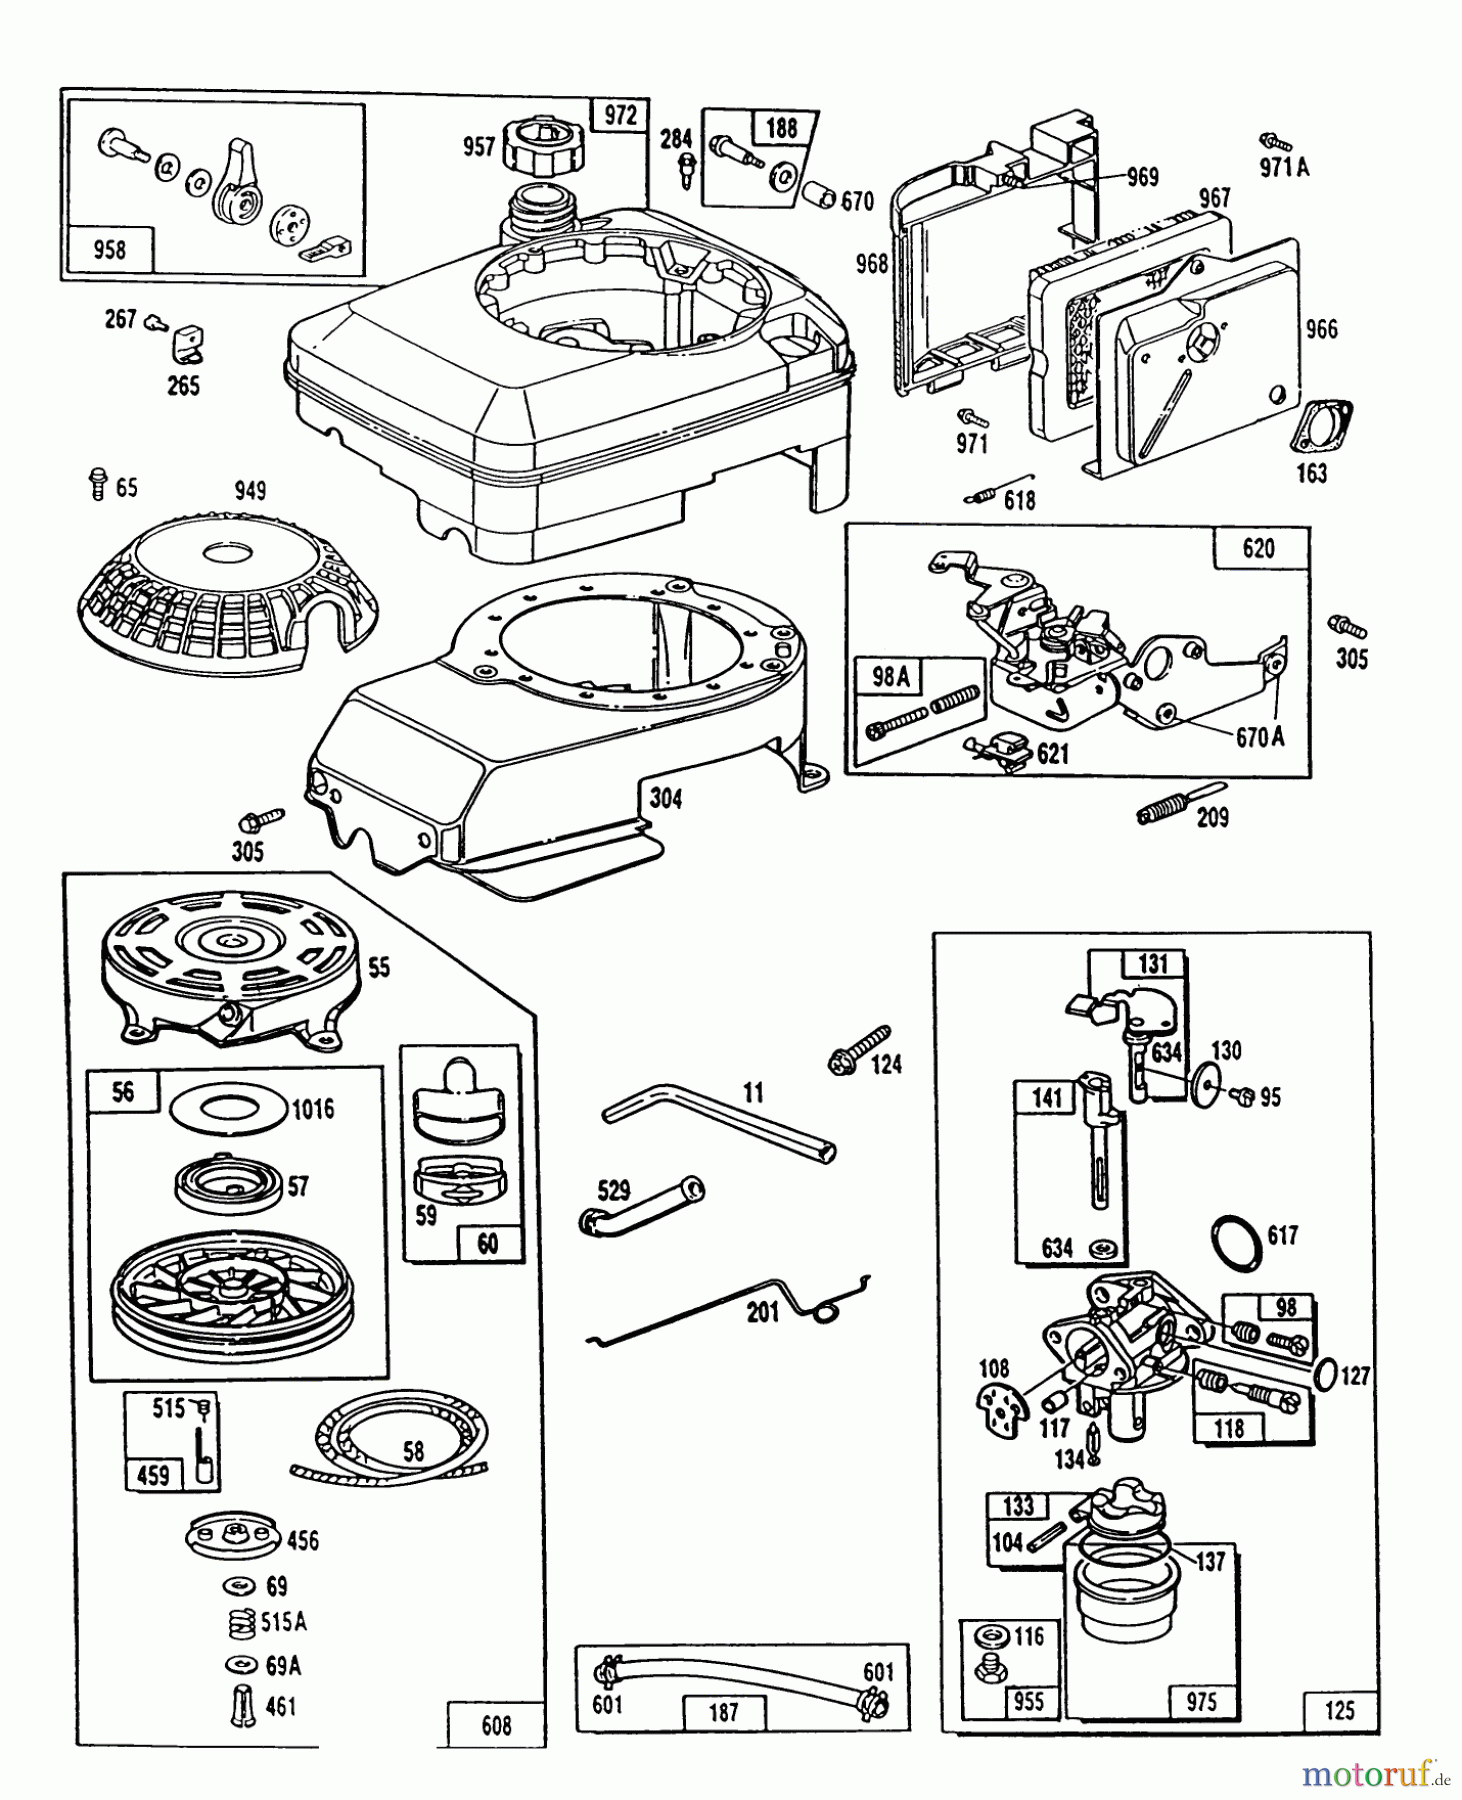  Toro Neu Mowers, Walk-Behind Seite 1 20667 - Toro Lawnmower, 1990 (0000001-0999999) ENGINE MODEL NO. 124702-0137-01